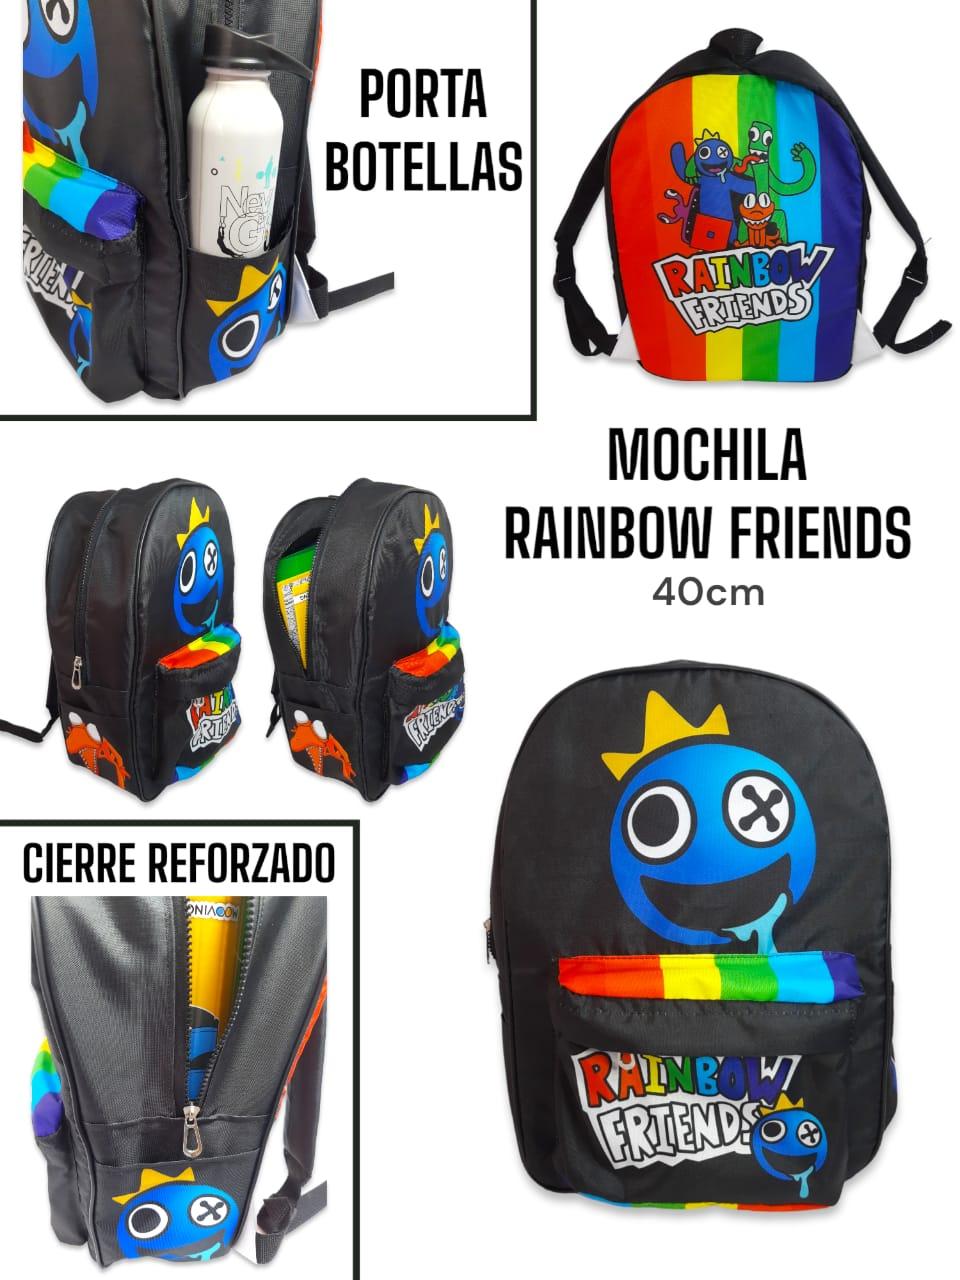 Mochila Rainbow Friends 40cm